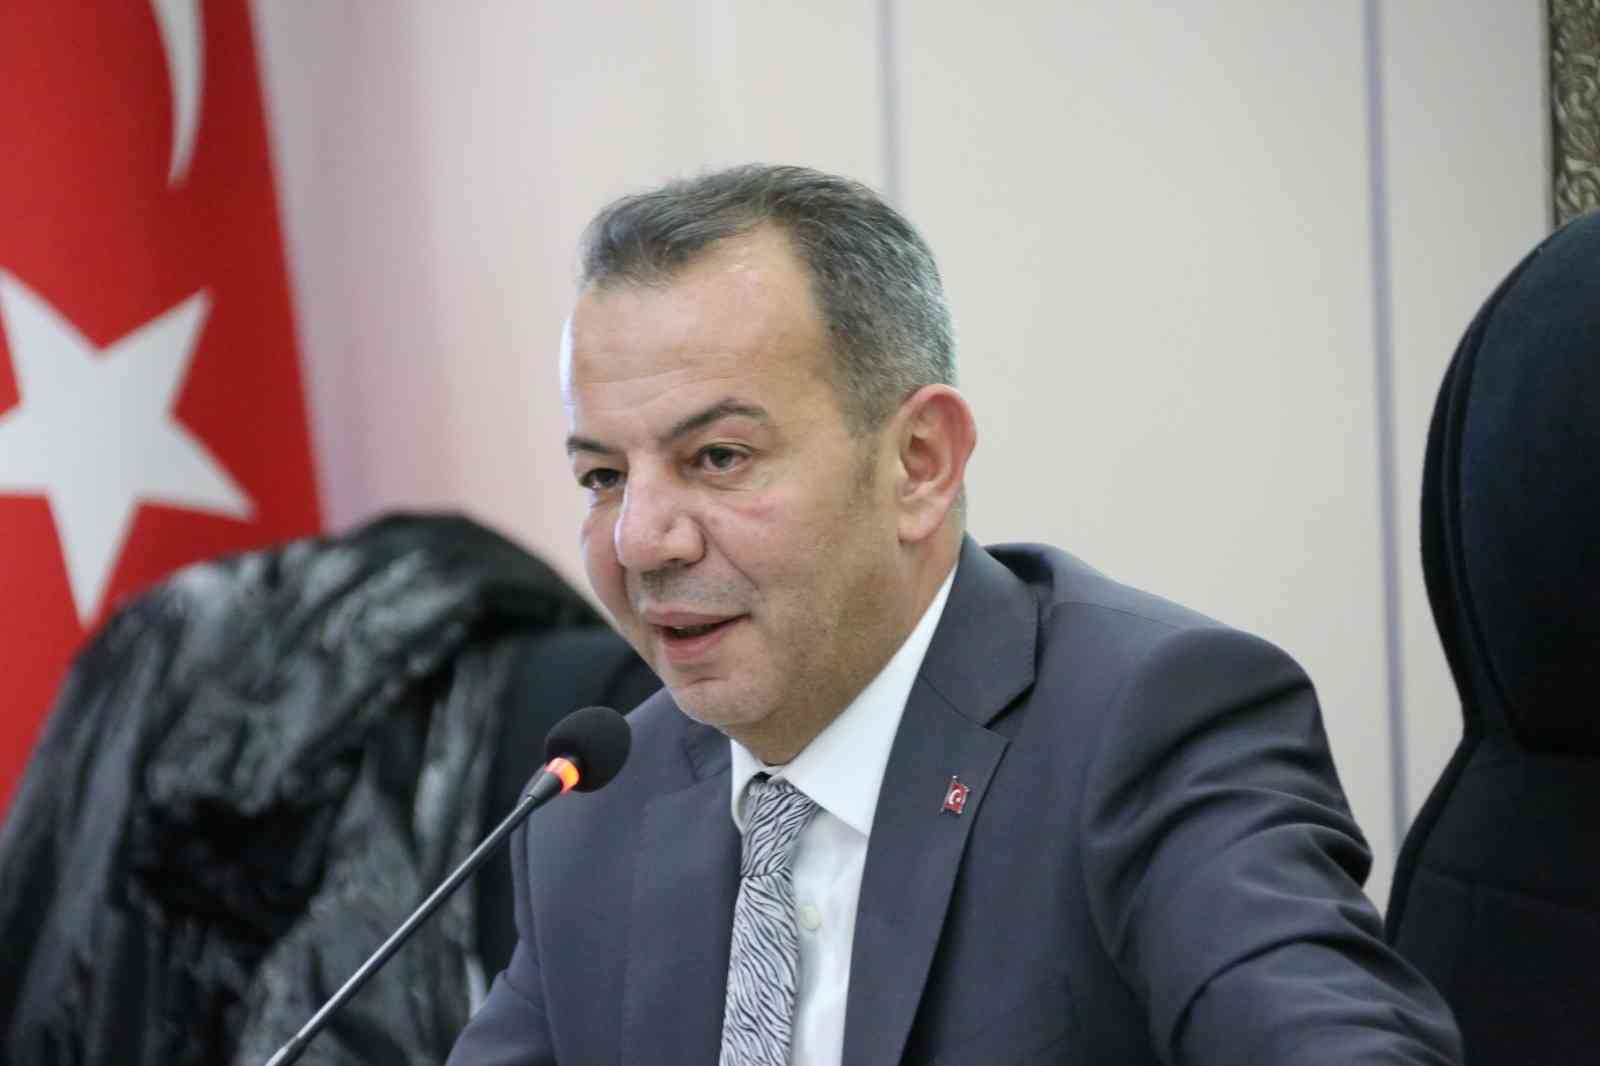 Bolu Belediye Başkanı Özcan’dan ’sığınmacı’ açıklaması #bolu